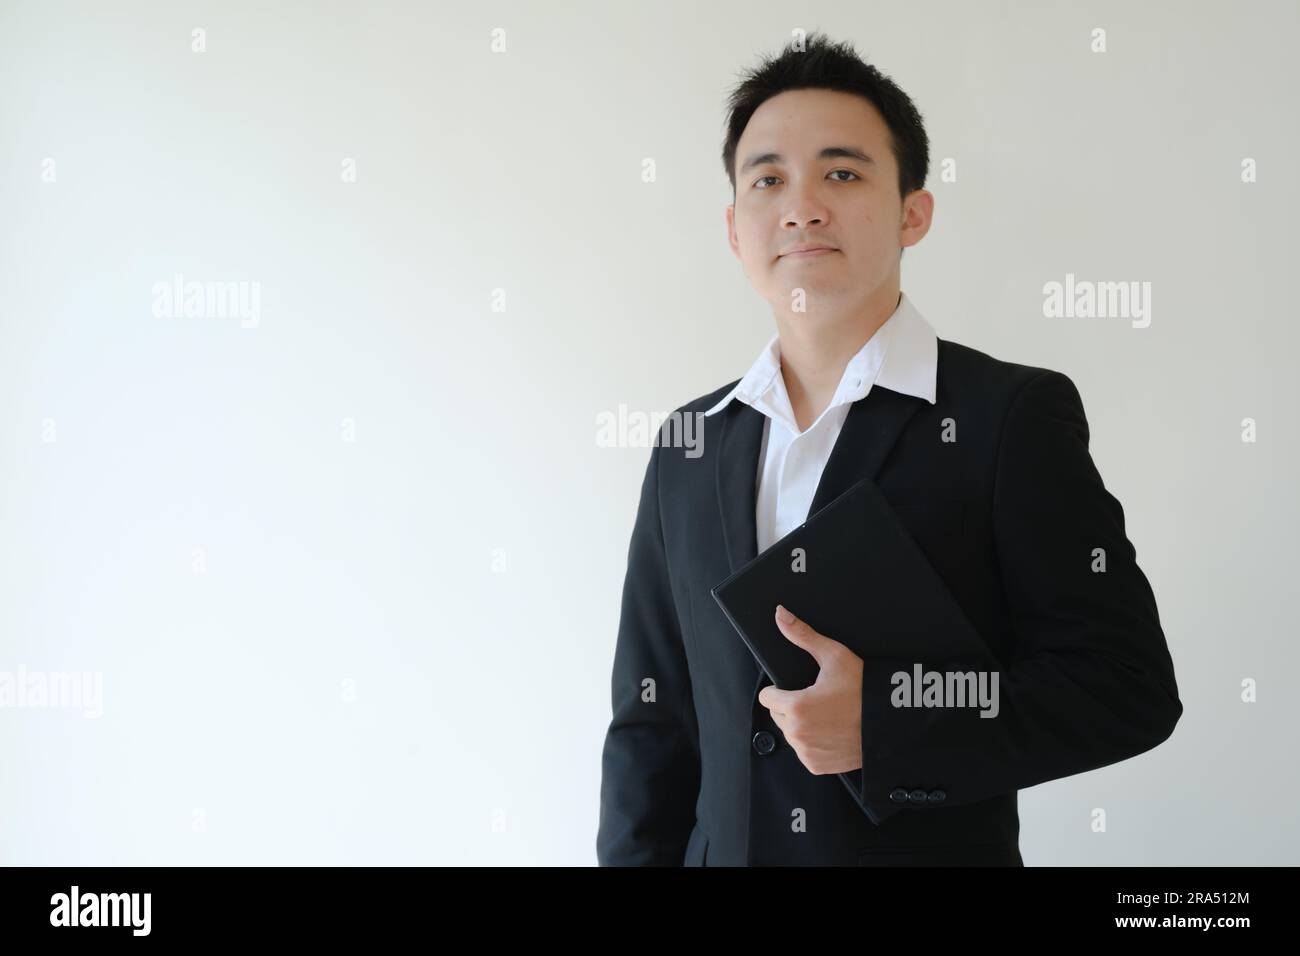 Ein junger asiatischer Geschäftsmann, der ein Tablet in der Hand hält und in die Kamera schaut. Isolierter weißer Hintergrund. Stockfoto